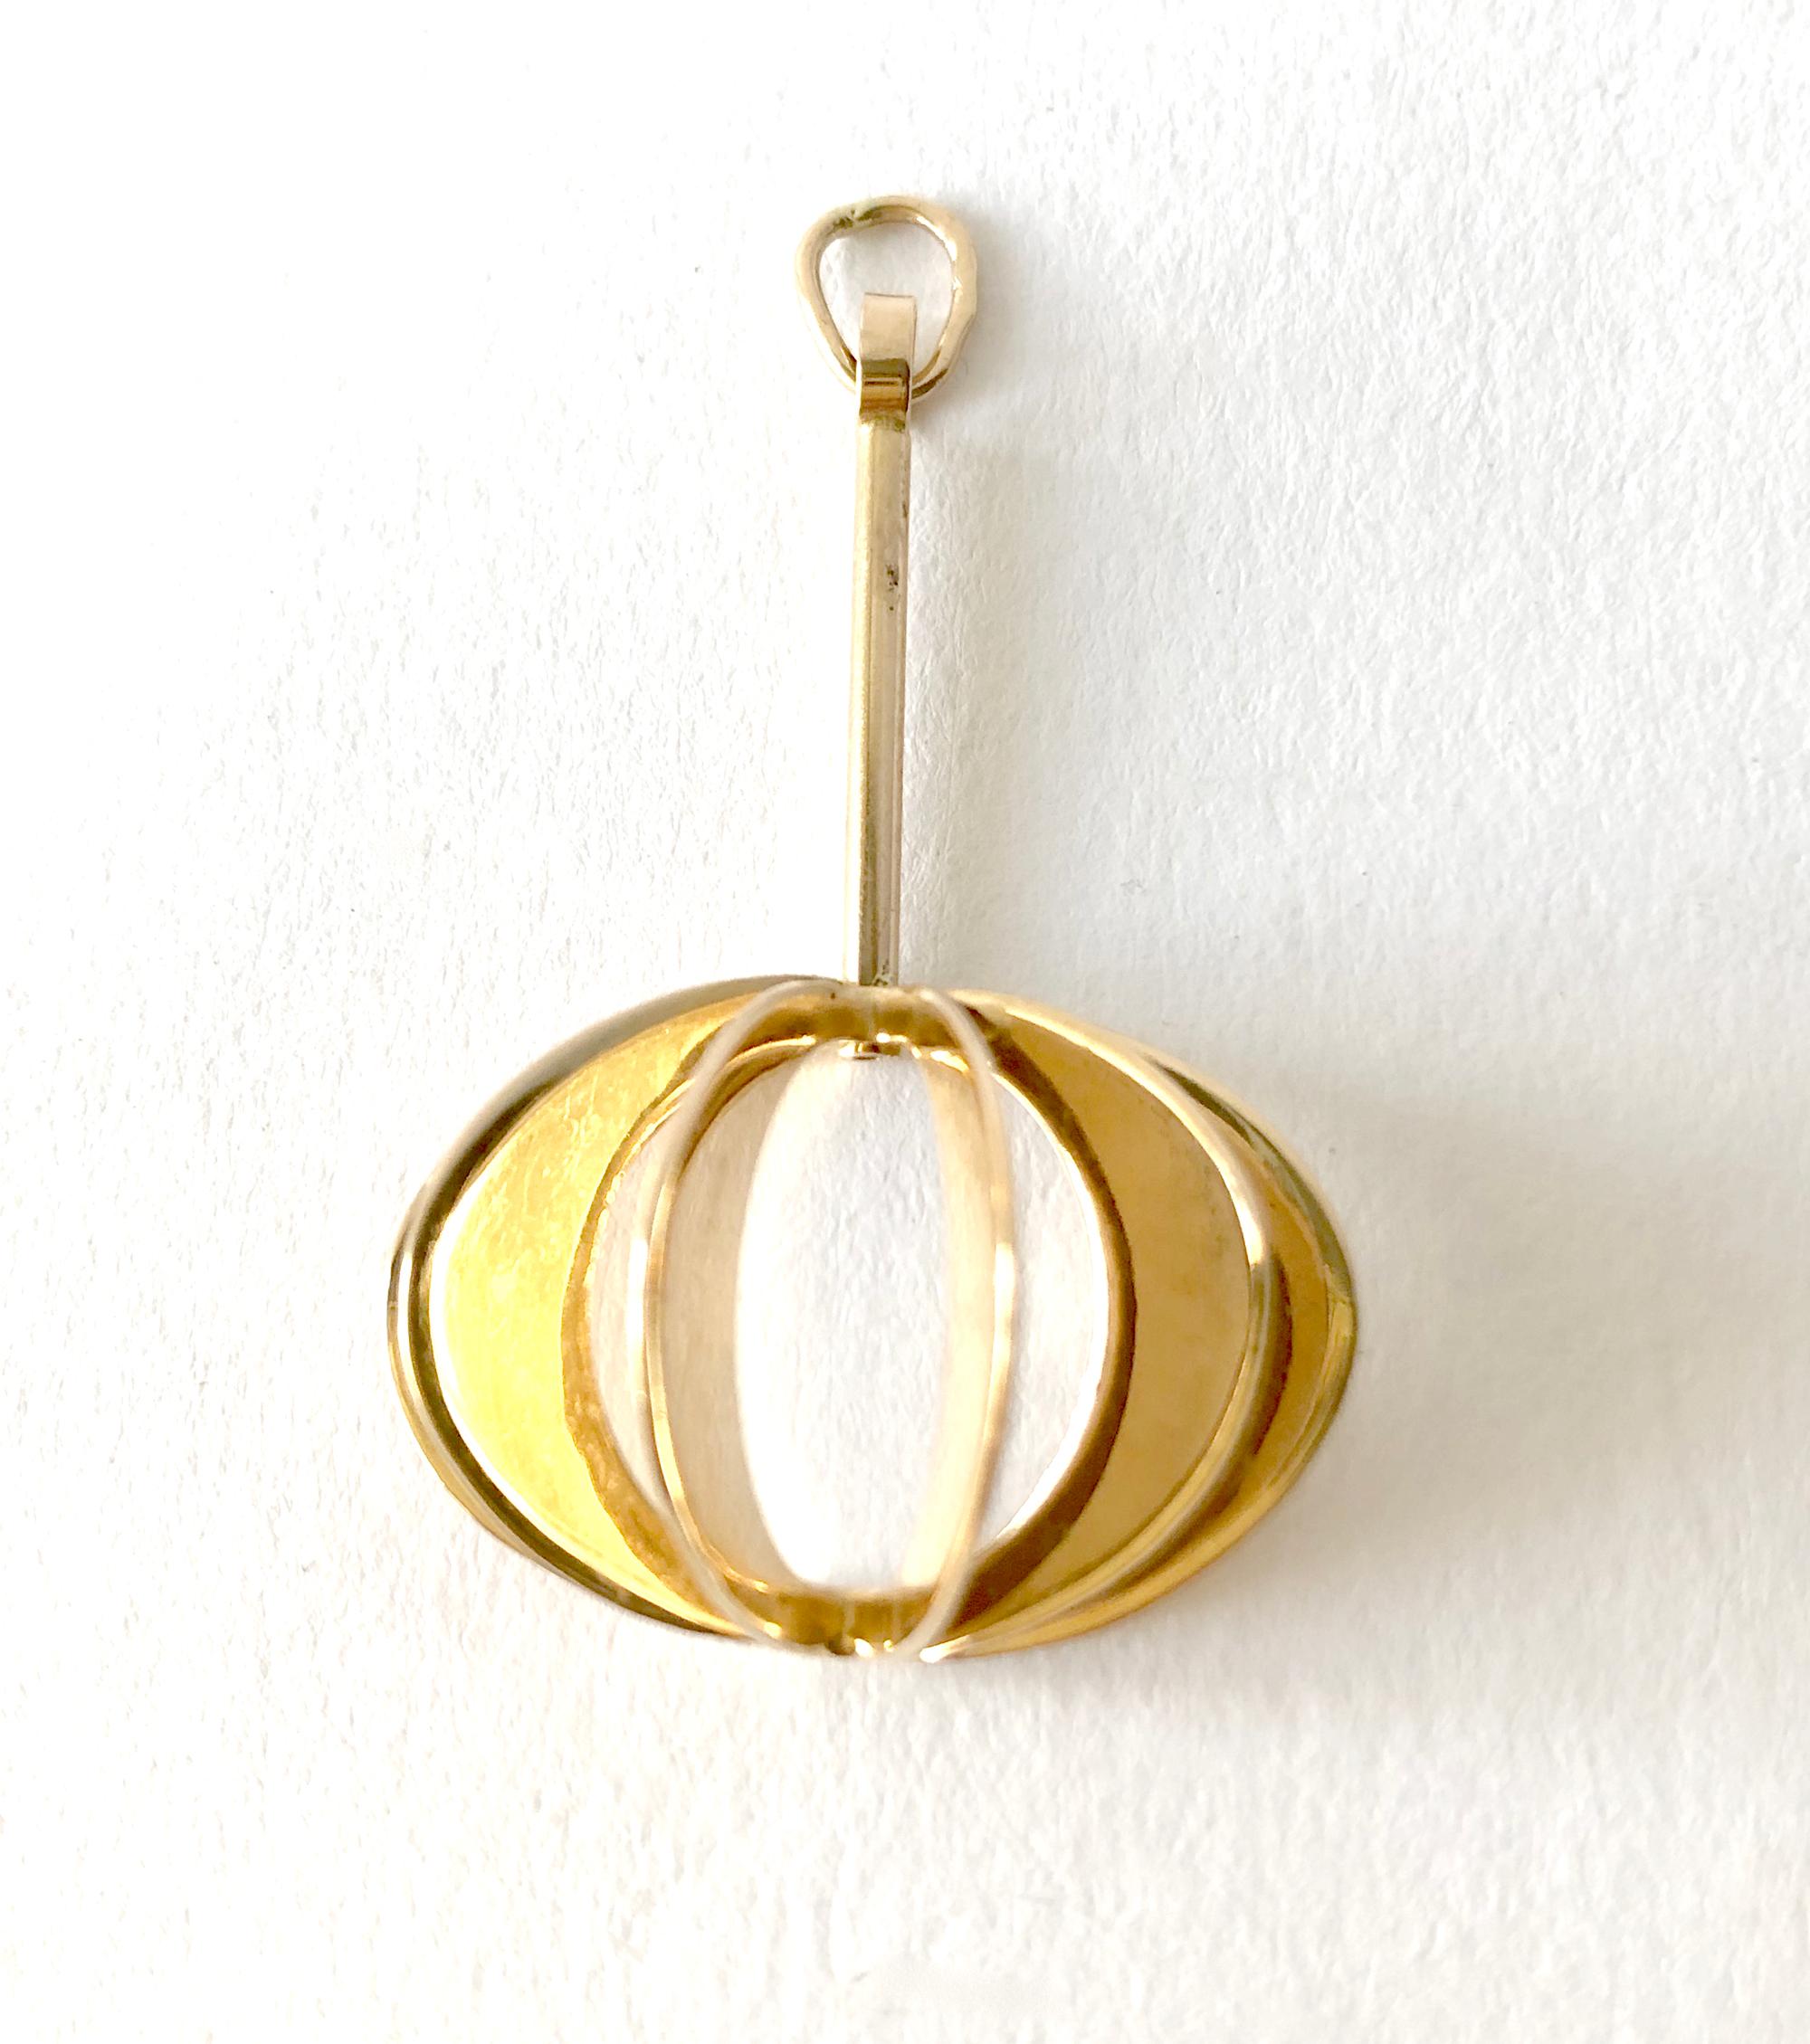 An 18 karat gold pendant designed by goldsmith Theresia Hvorslev of Stockholm, Sweden.  Pendant measures 1.5